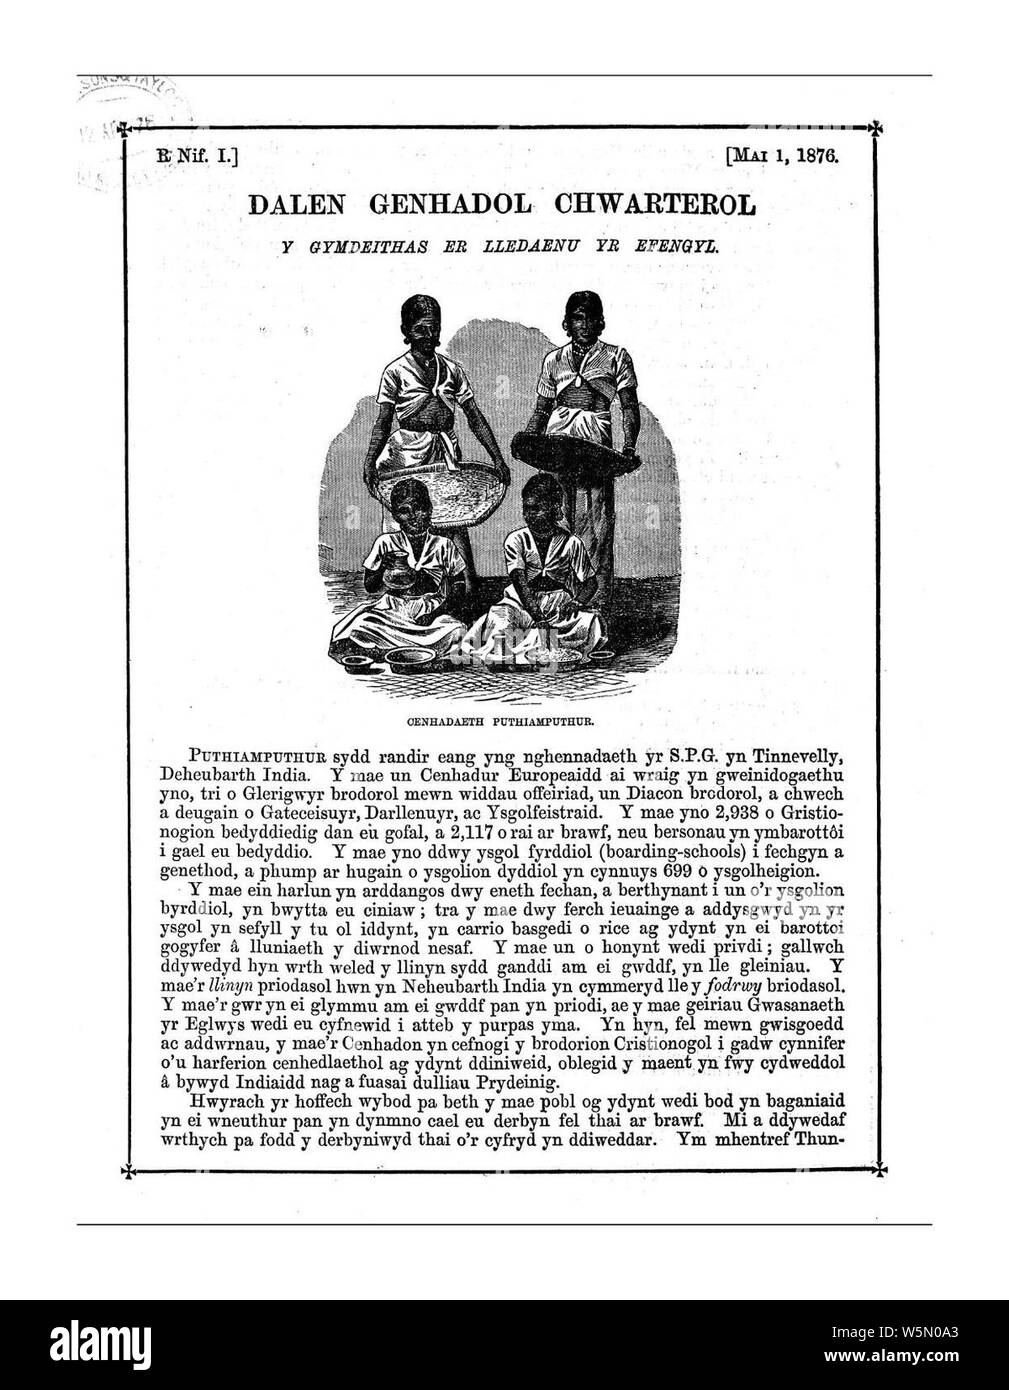 Dalen genhadol chwarterol y Gymdeithas äh Ledaenu yr Efengyl (Waliser Journal). Stockfoto